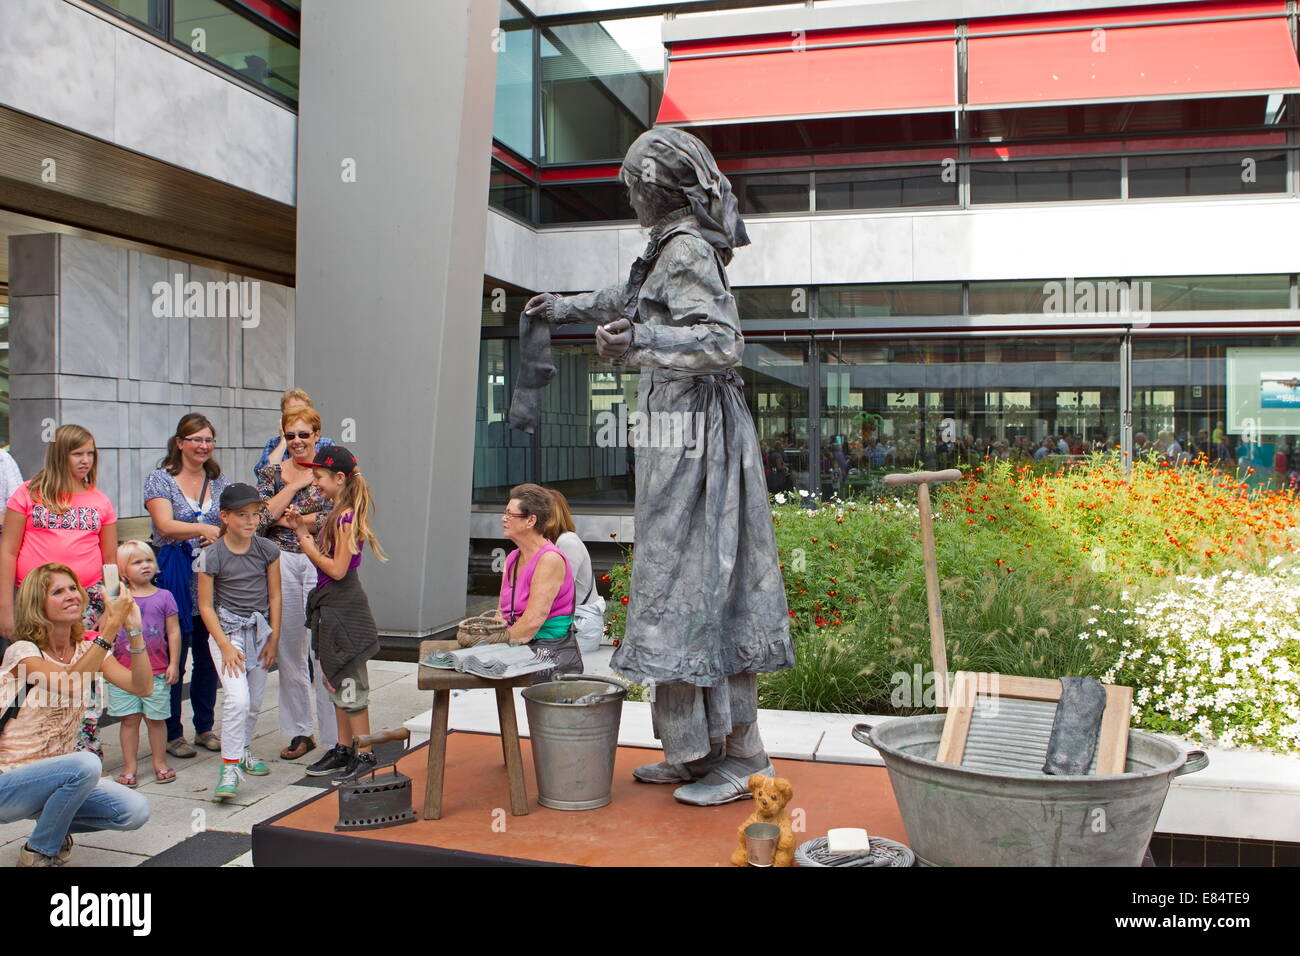 Arnhem, Netherlands - September 28, 2014: Artist imagines laundress during world championships living statues in Arnhem Stock Photo